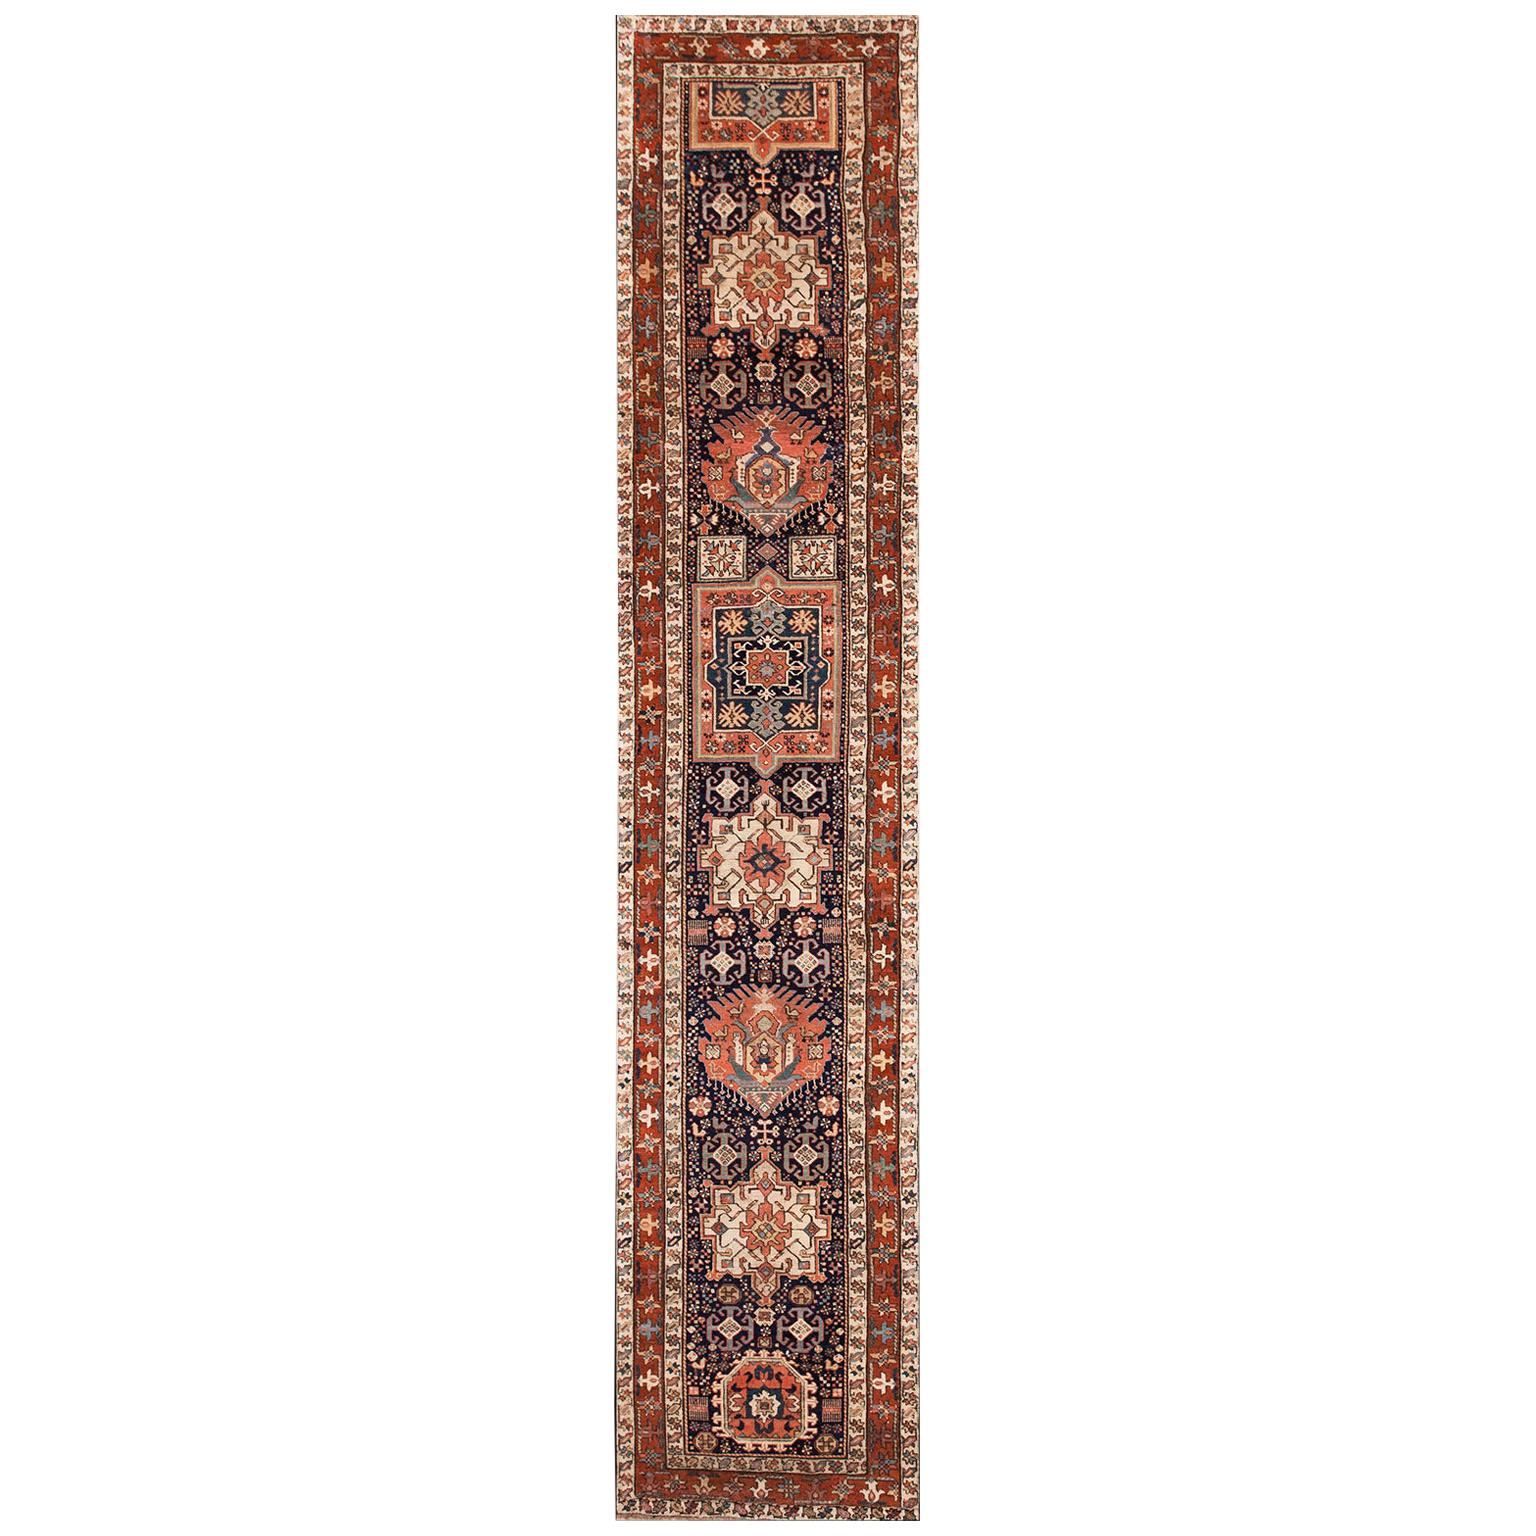 19th Century N.W. Persian Shahsavan Carpet ( 3' x 16' - 90 x 488 ) For Sale